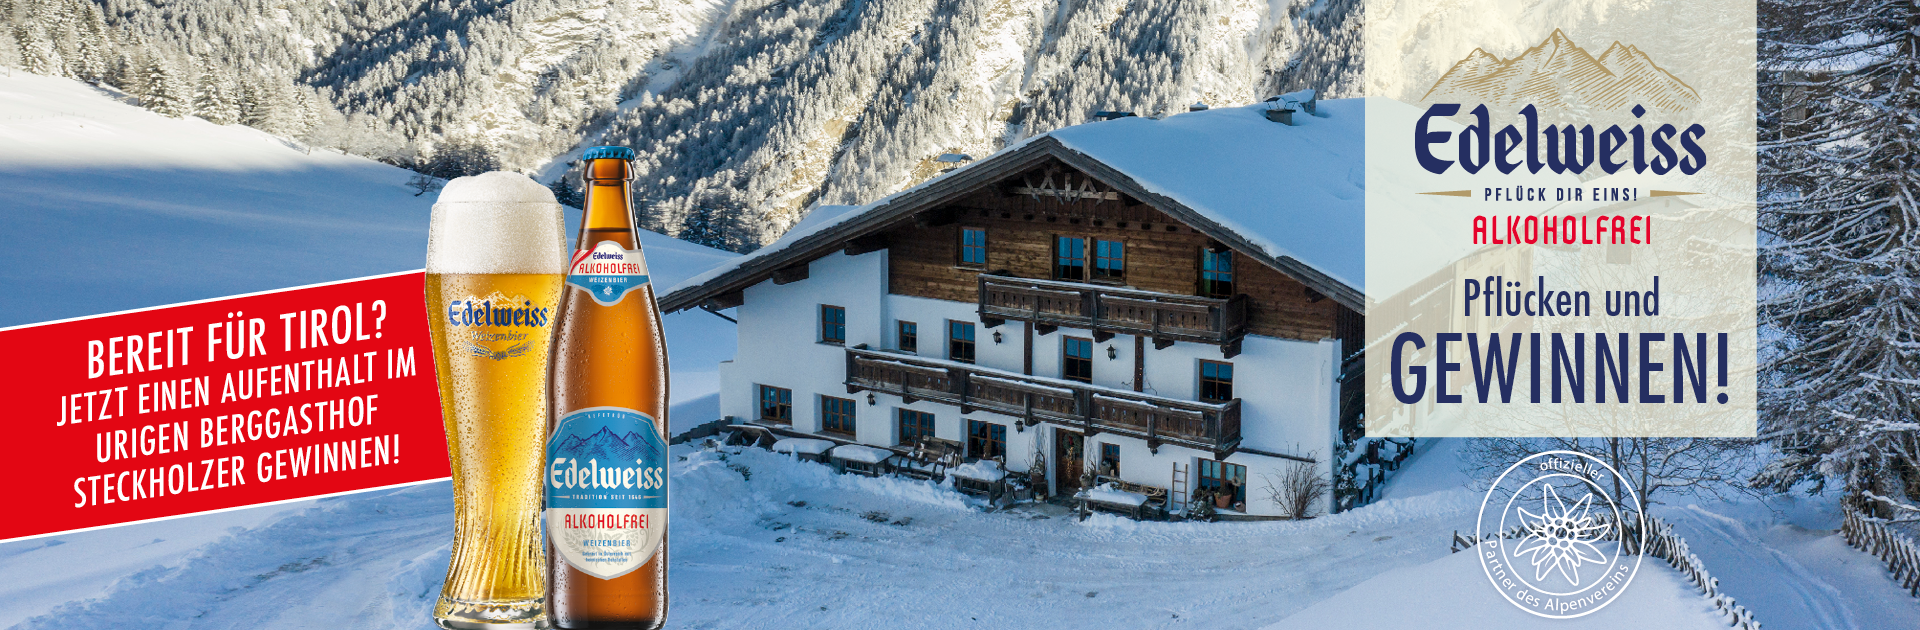 Das Bild zeigt das Edelweiss Alkoholfrei Bier und im Hintergrund eine Hütte in verschneiter Winterlandschaft.